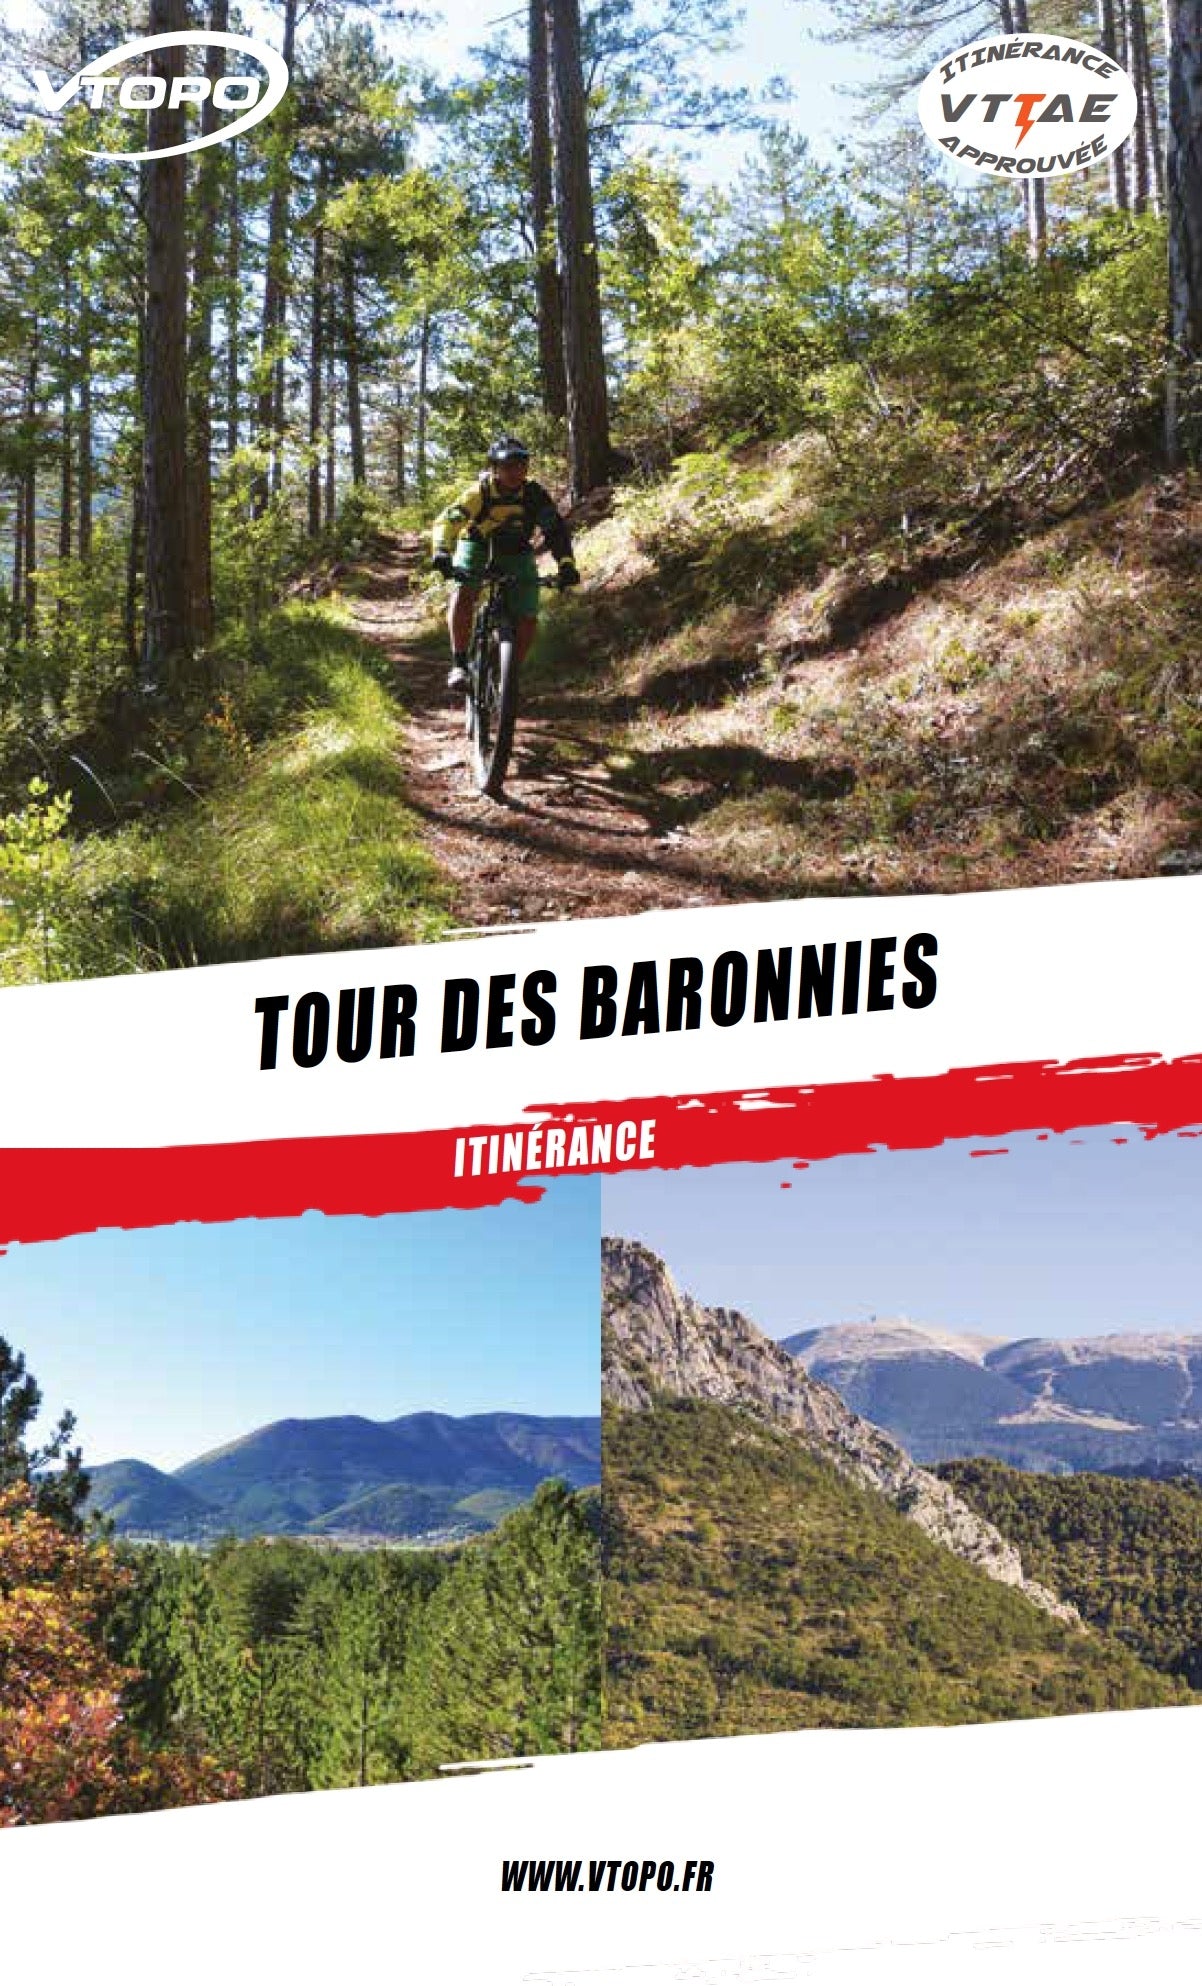 VTOPO VTT Itinérance Tour des Baronnies - Livre Numérique